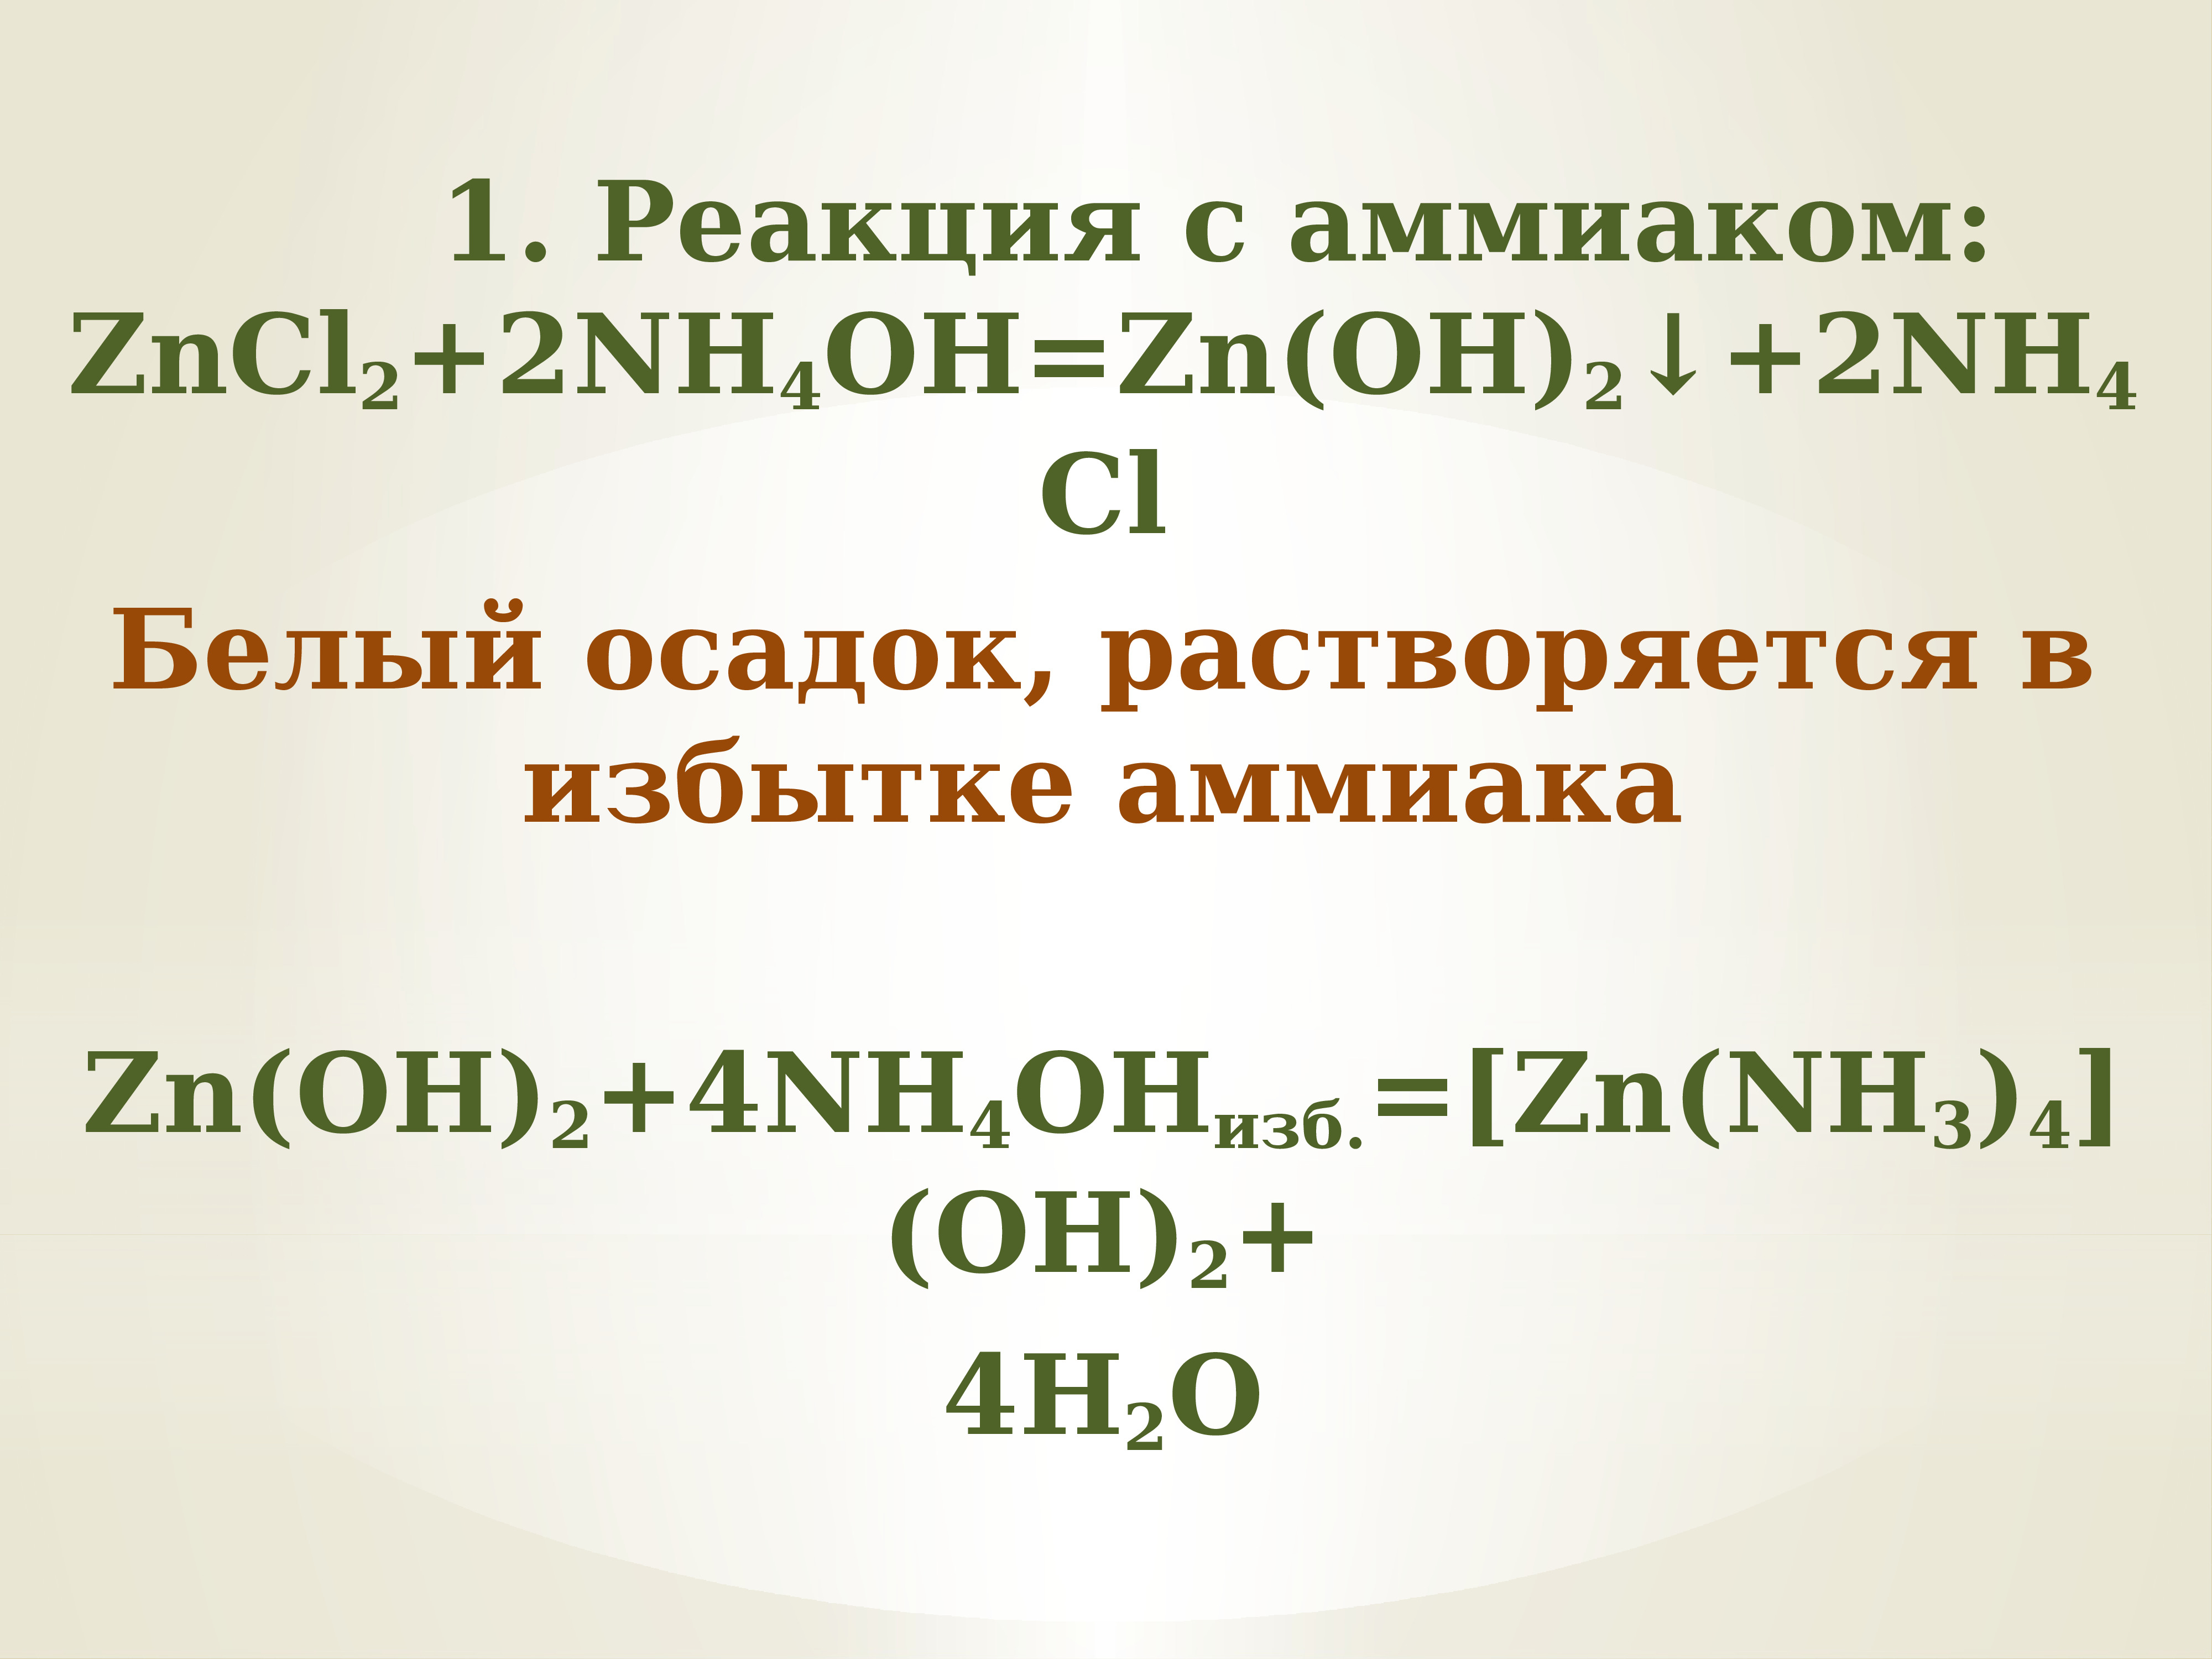 Nh4cl zn oh 2. Zncl2 nh3 h2o. ZN Oh 2 nh4oh. Zncl2 nh4oh. [ZN(nh3)4](Oh)2.